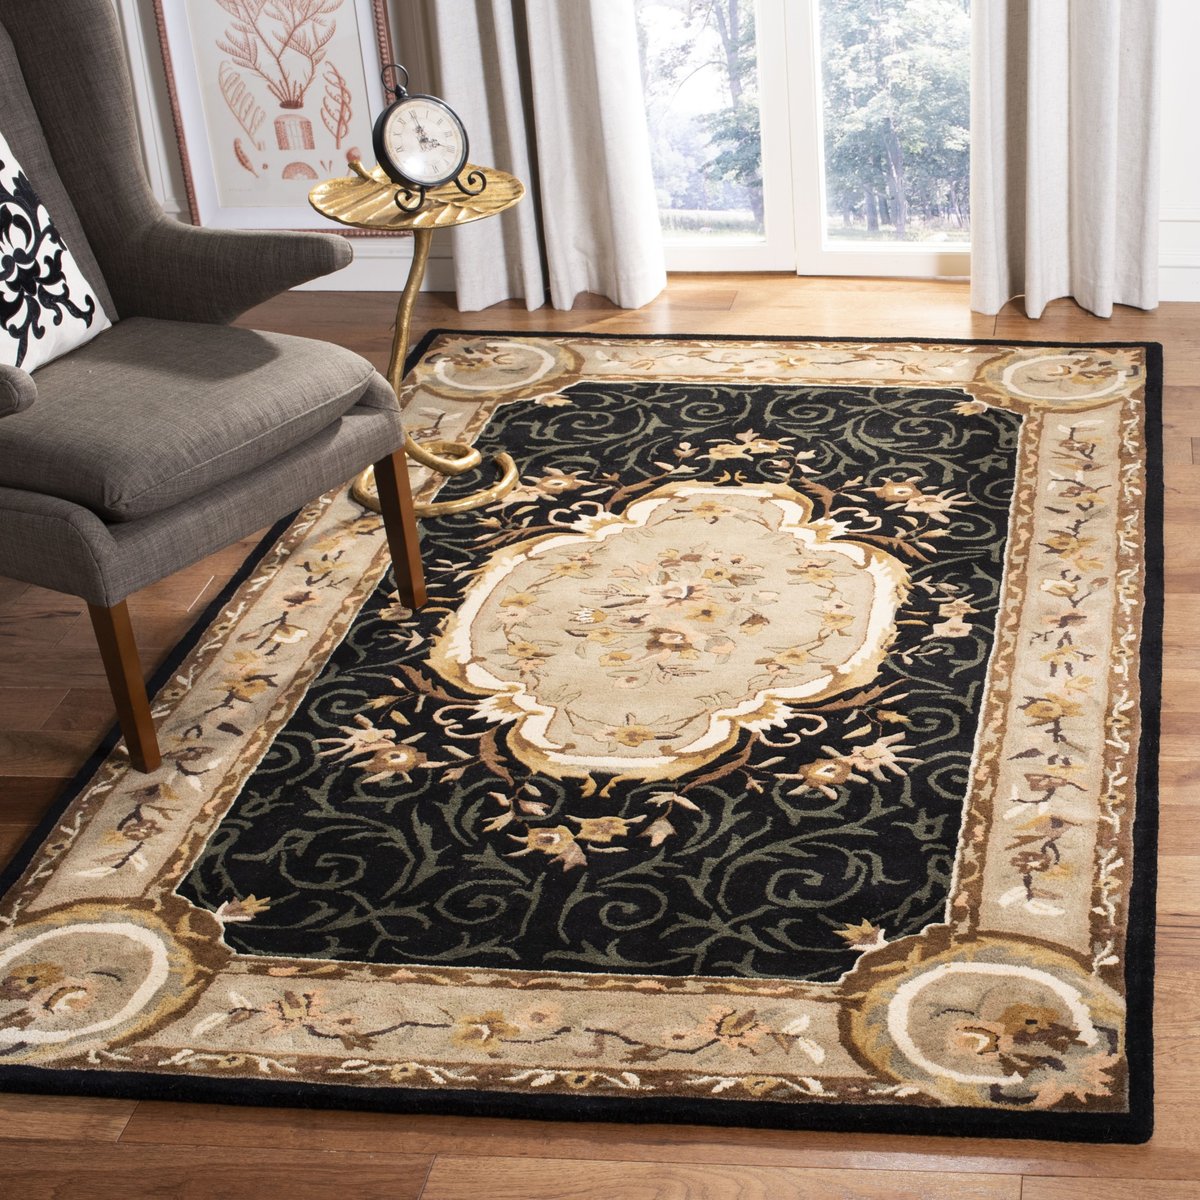 Traditional Elegance 100% Wool Floral Design Soft Multi Rug Hand Tufted Carpet 